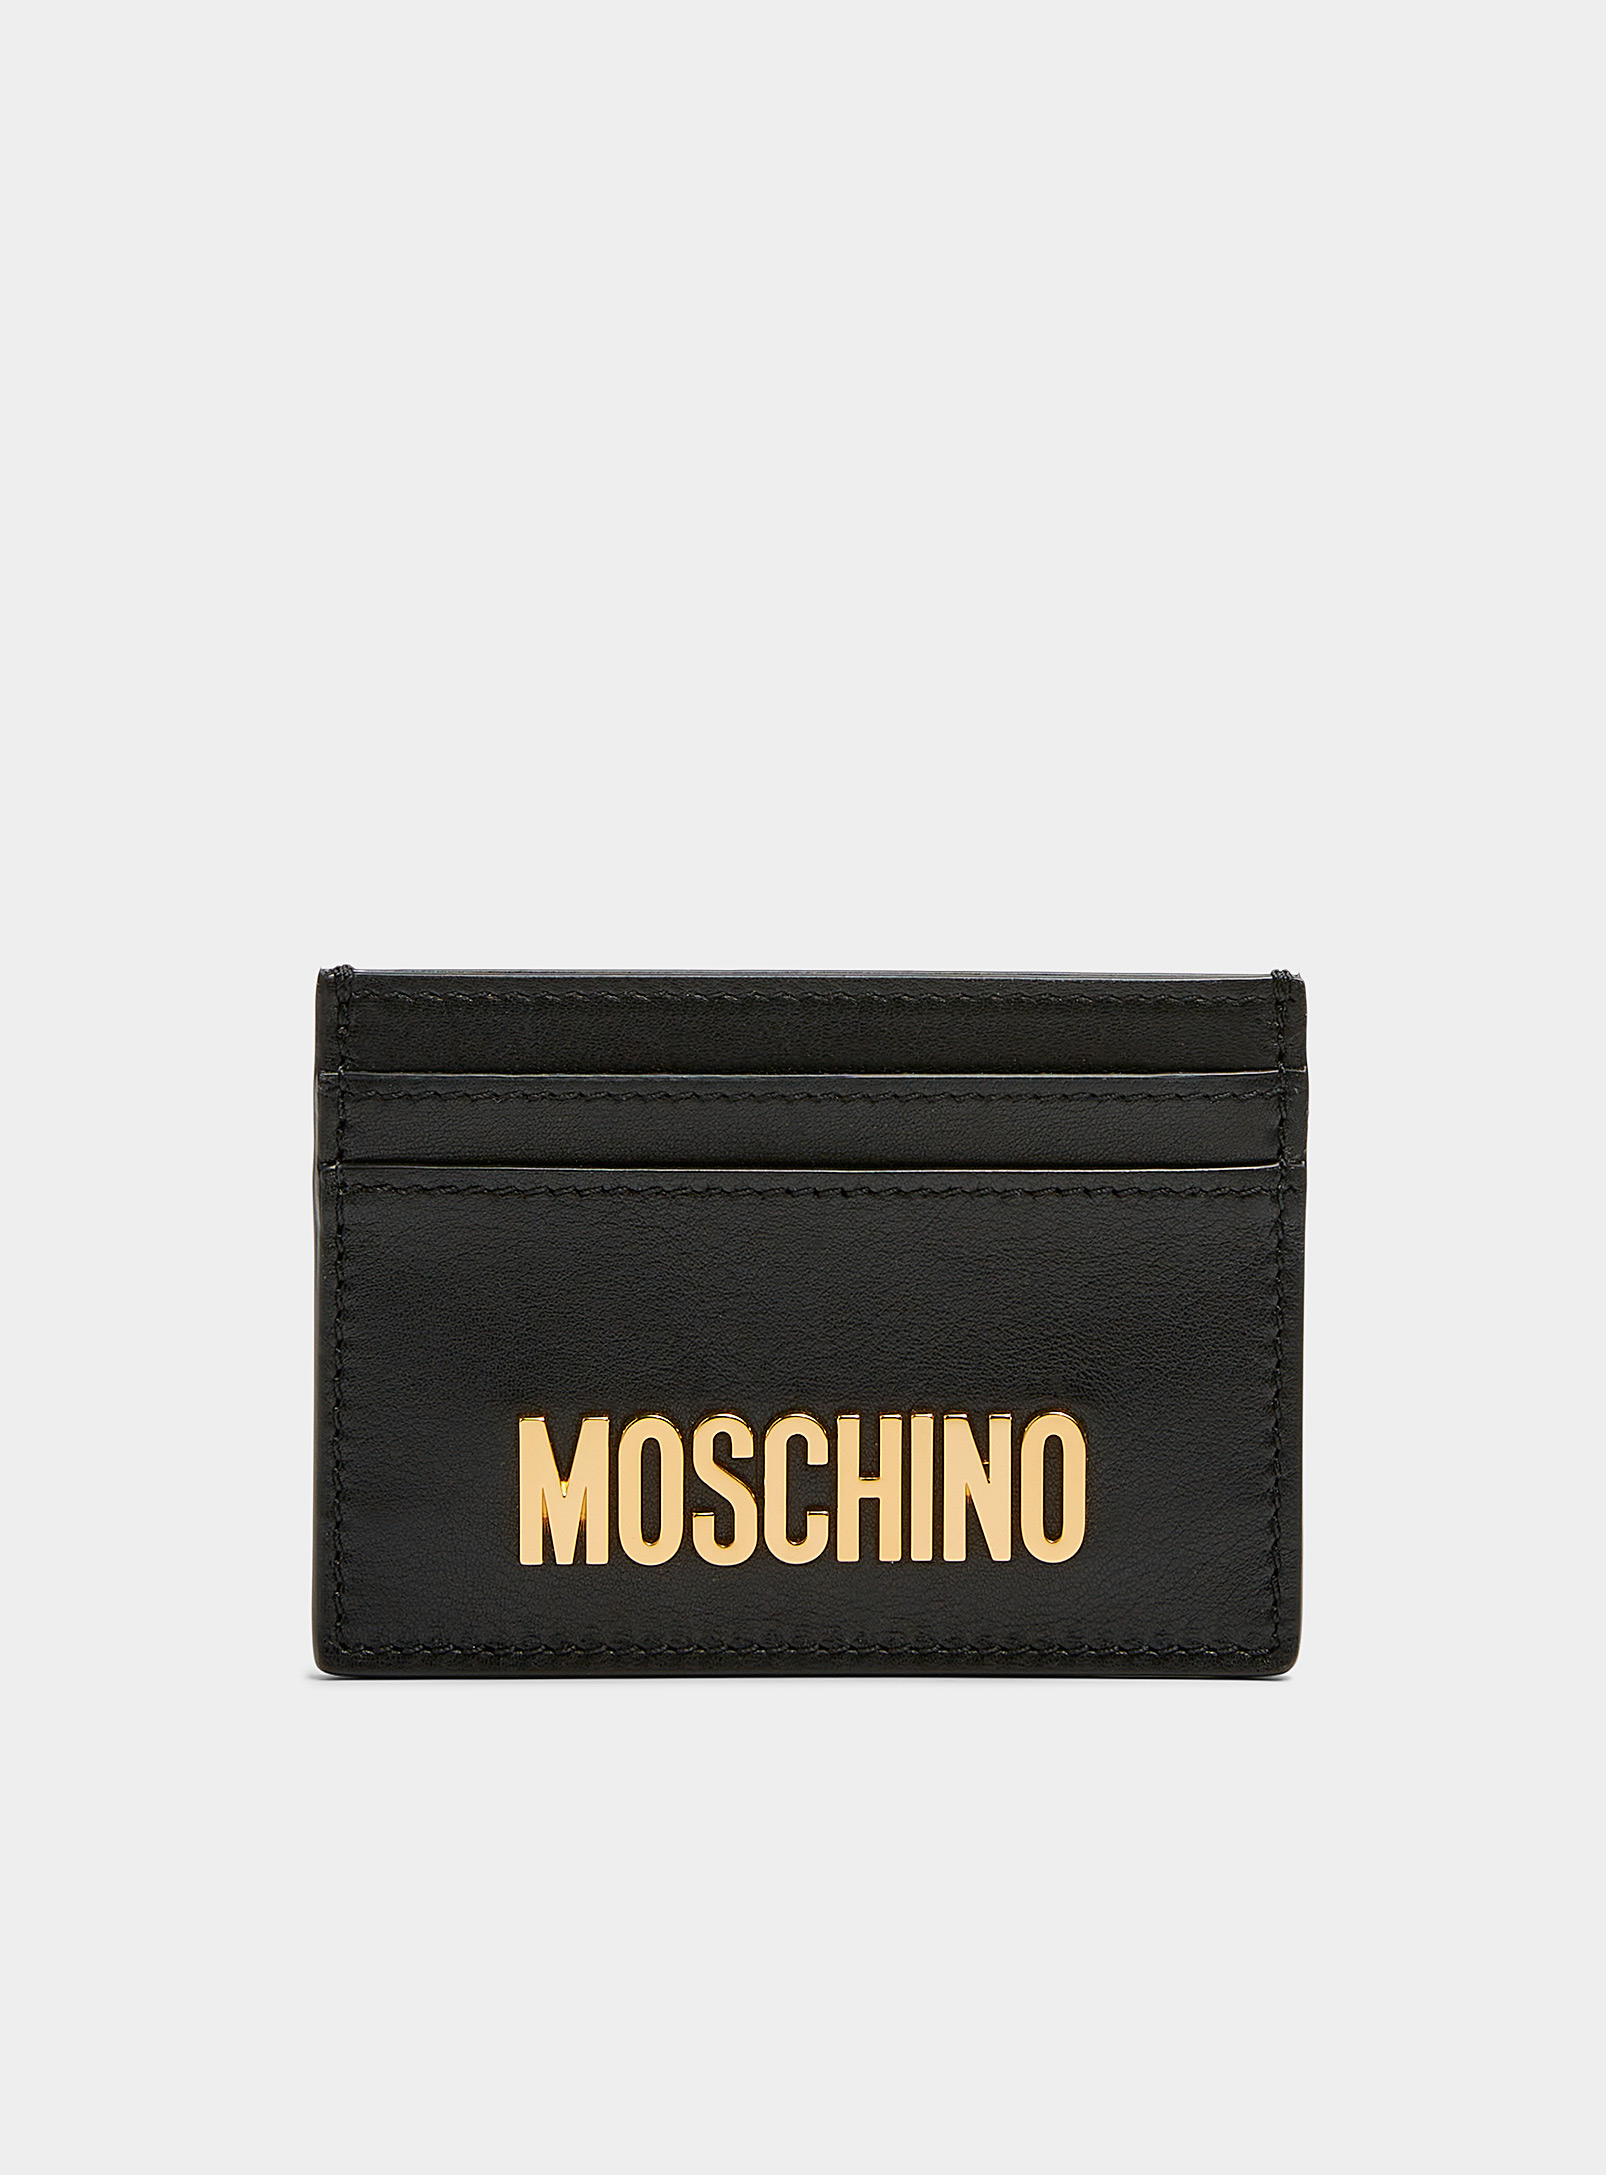 Moschino - Men's Golden logo card case